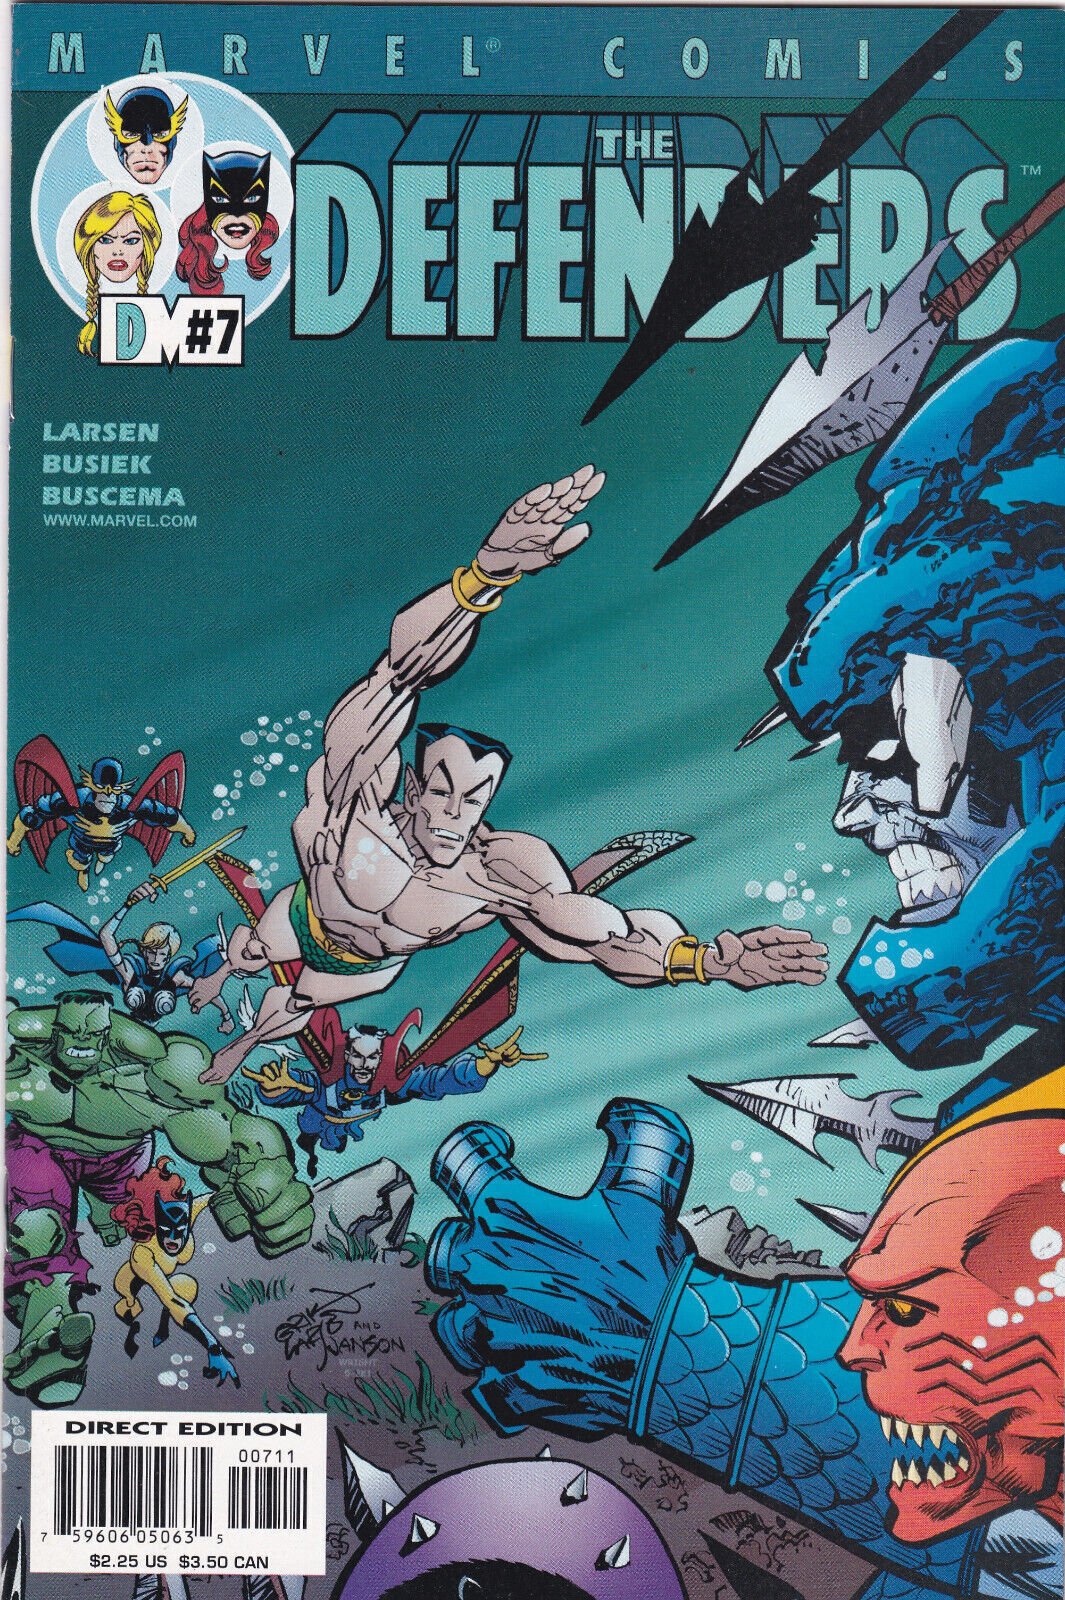 The Defenders #7, Vol. 2 (2001-2002) Marvel Comics,High Grade